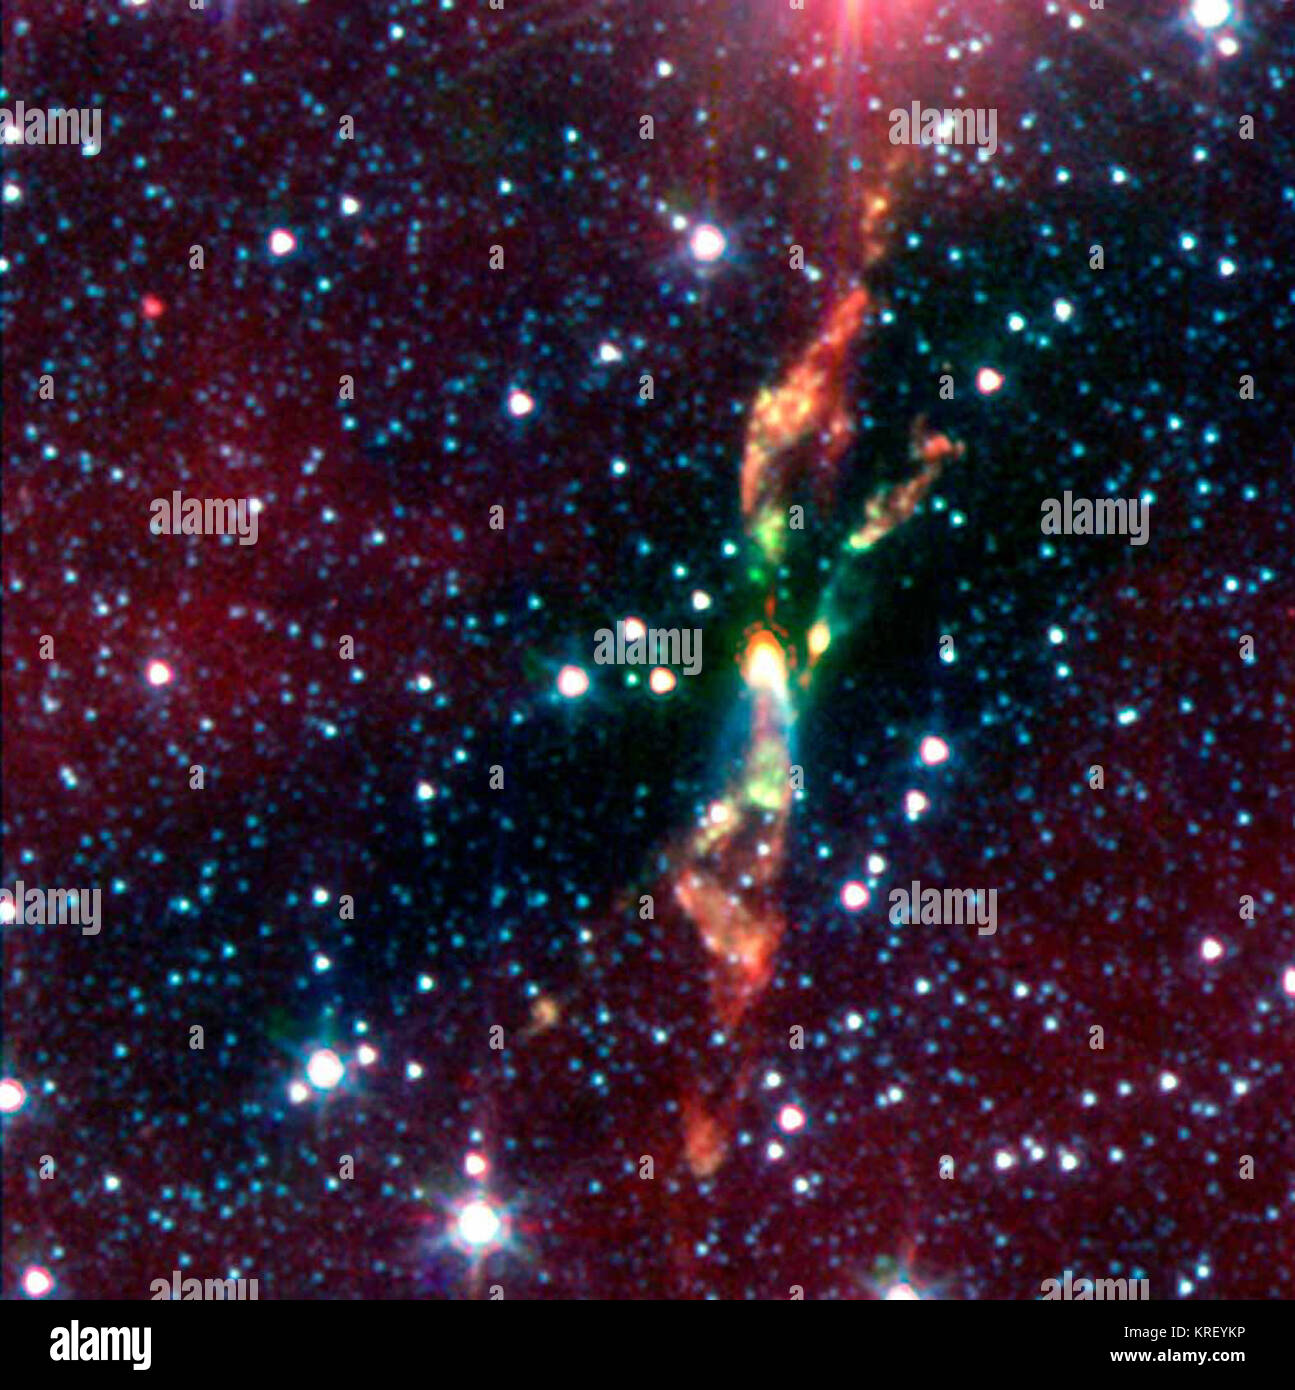 Deux jeunes étoiles exubérant détruisent leur thème nuage de poussières grâce à de puissants jets de radiations, dans une image infrarouge du télescope spatial Spitzer de la NASA. Les étoiles sont situées à environ 600 années-lumière dans un nuage cosmique appelé BHR 71. En lumière infrarouge, la baby stars sont indiquées comme les taches jaune vif vers le centre. Ces deux taches jaunes ont traînées de tir vert hors d'eux. Les feux follets verts révèlent le début d'un jet. Comme un arc-en-ciel, le jet commence comme vert, puis passe à l'orange et rouge vers la fin. La jets en modifiant les couleurs, révèle une FEP de refroidissement Banque D'Images